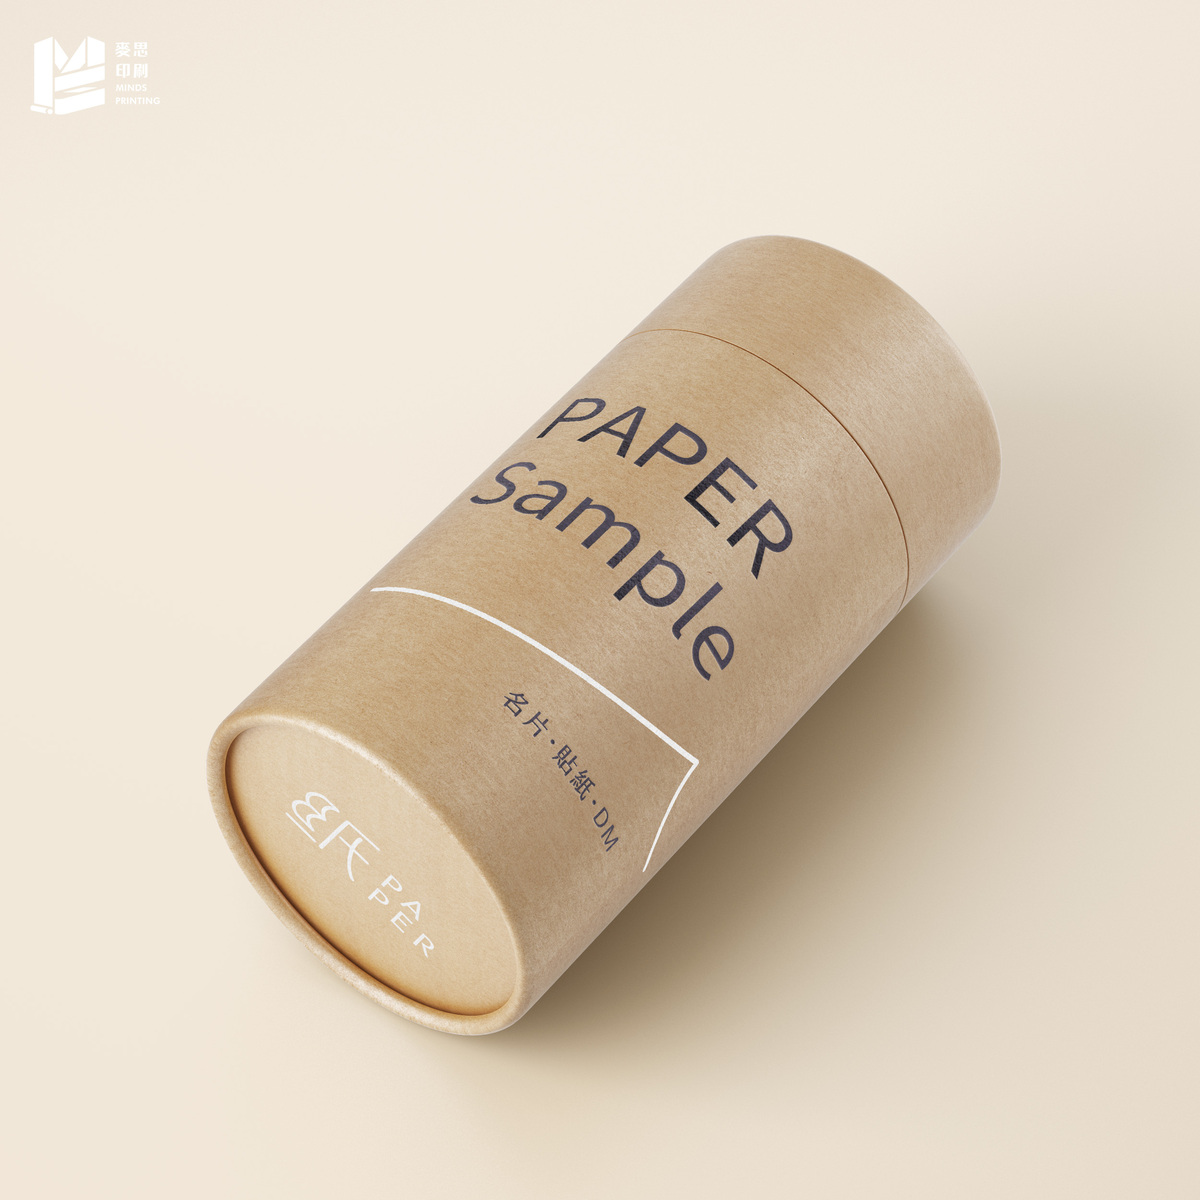 【紙 PAPER】紙樣包裝盒設計-1